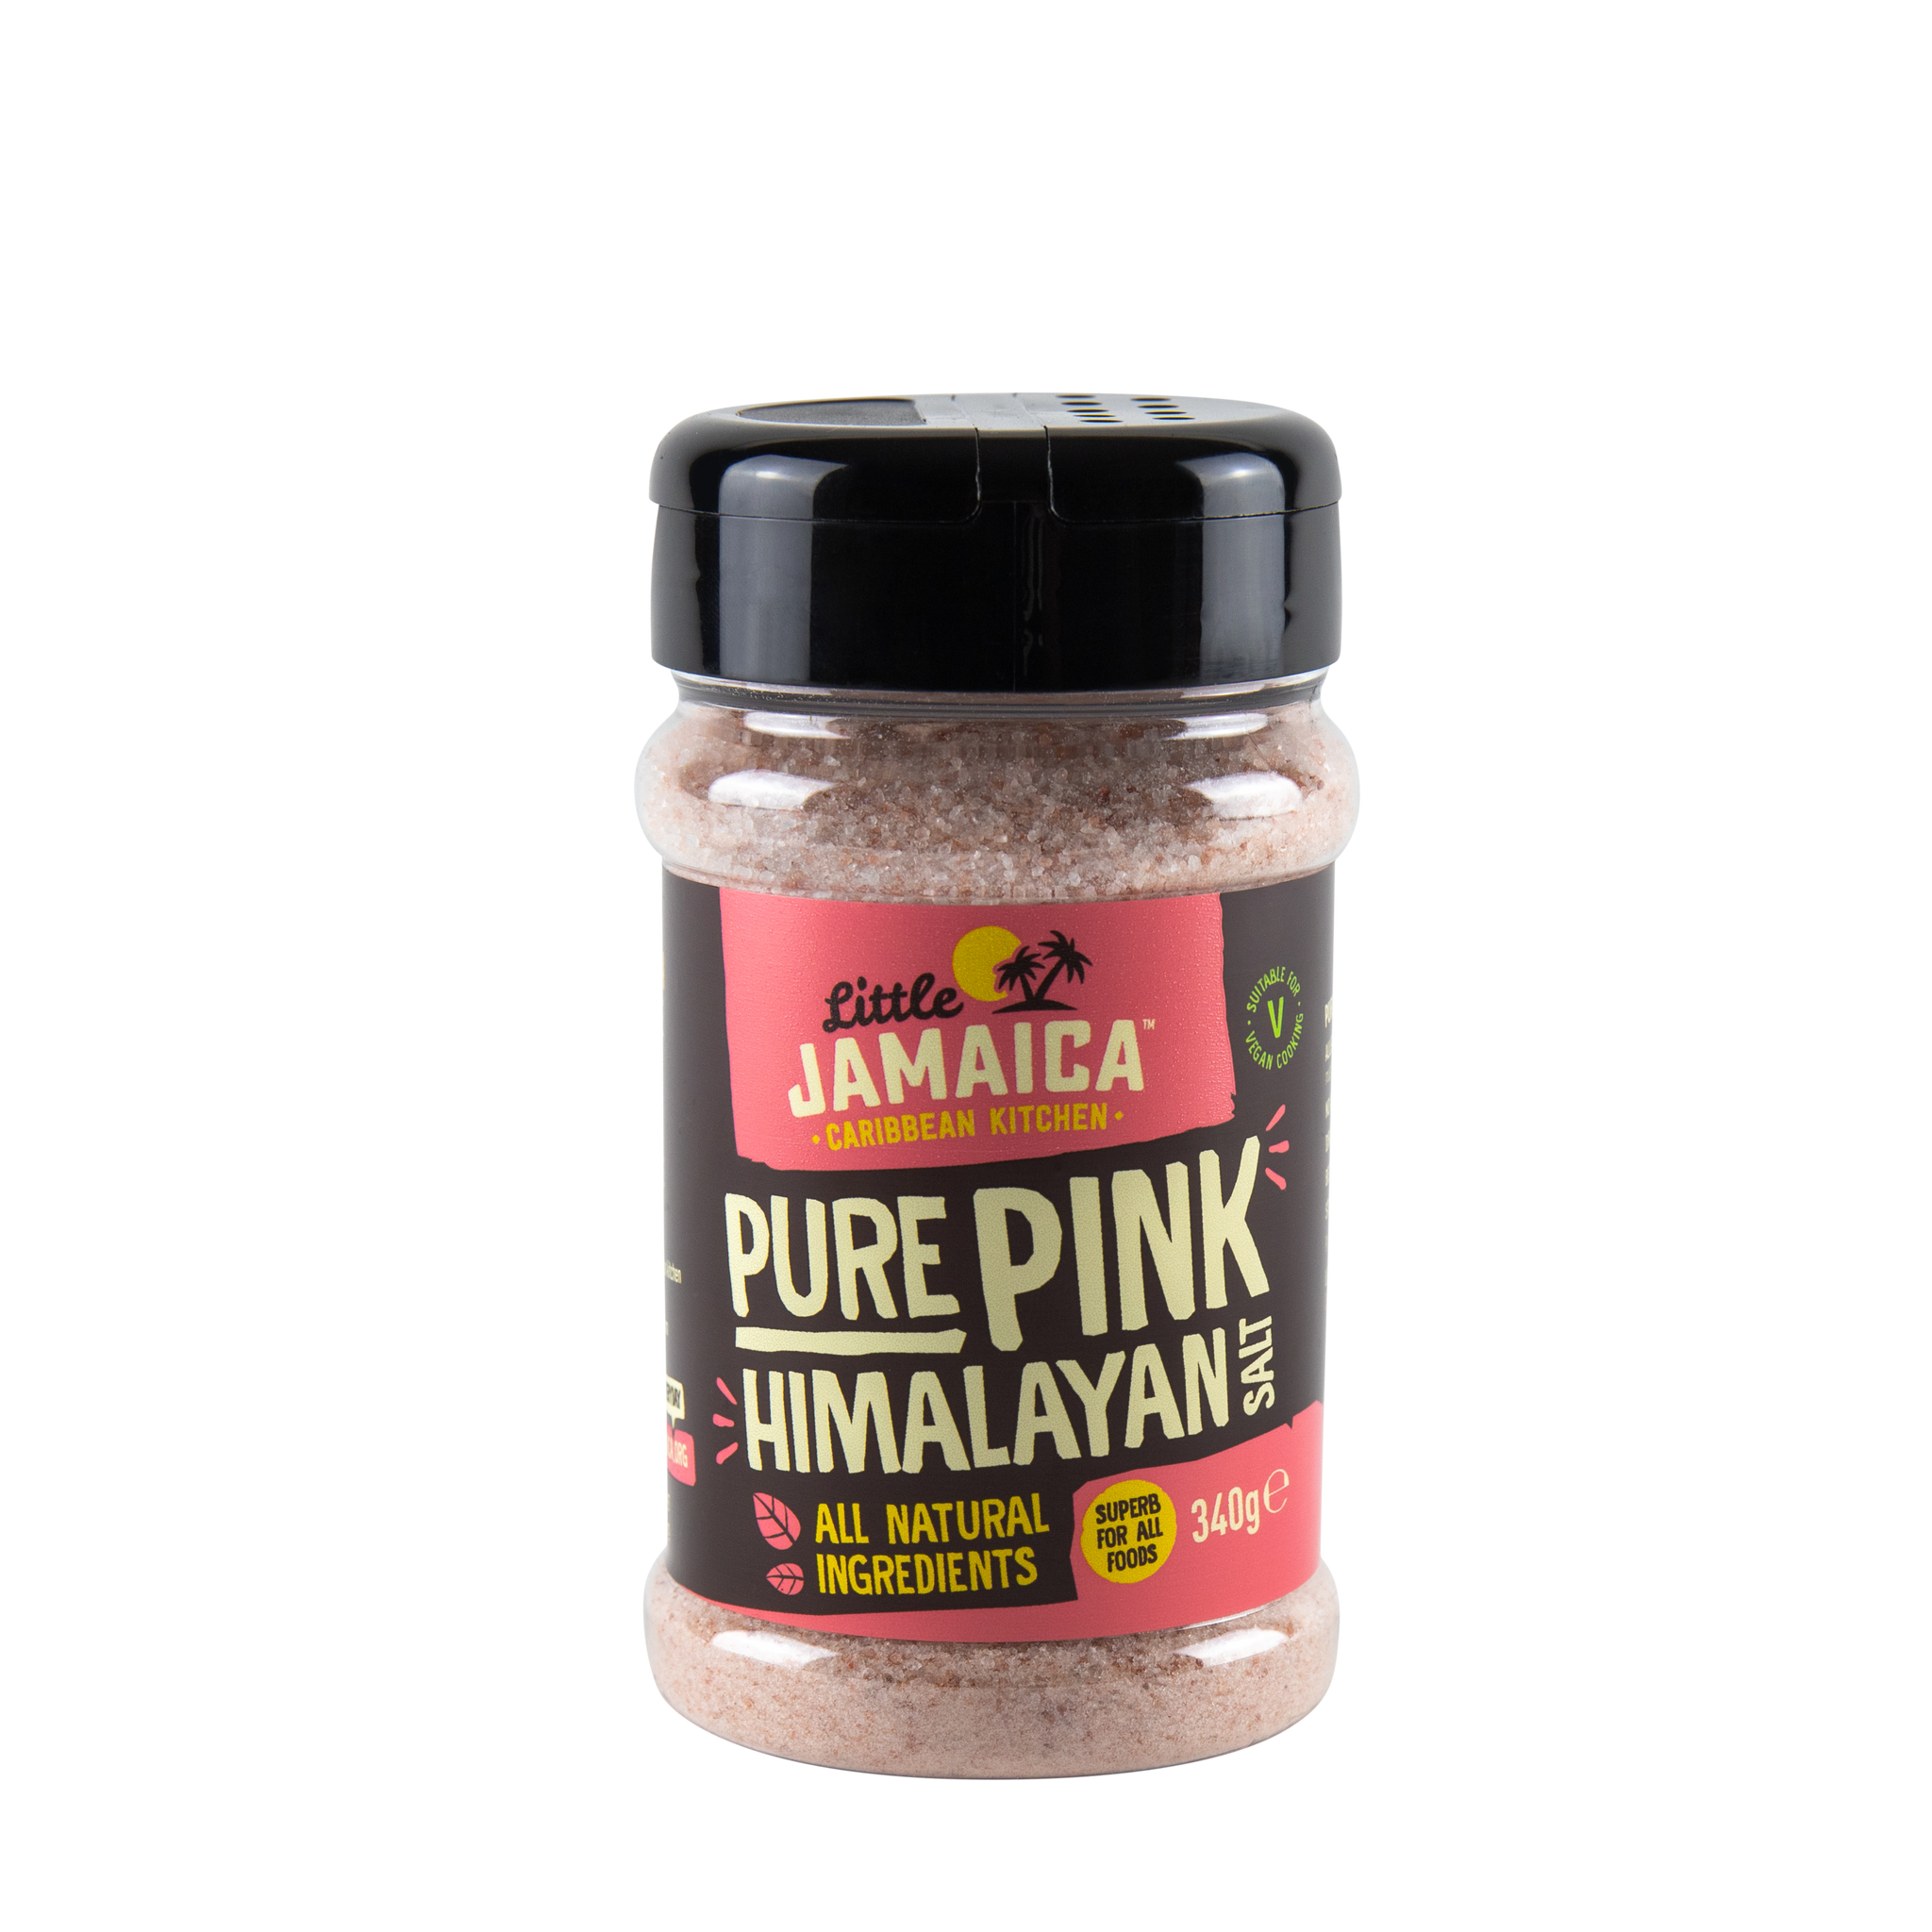 Pure Pink Himalayan Salt